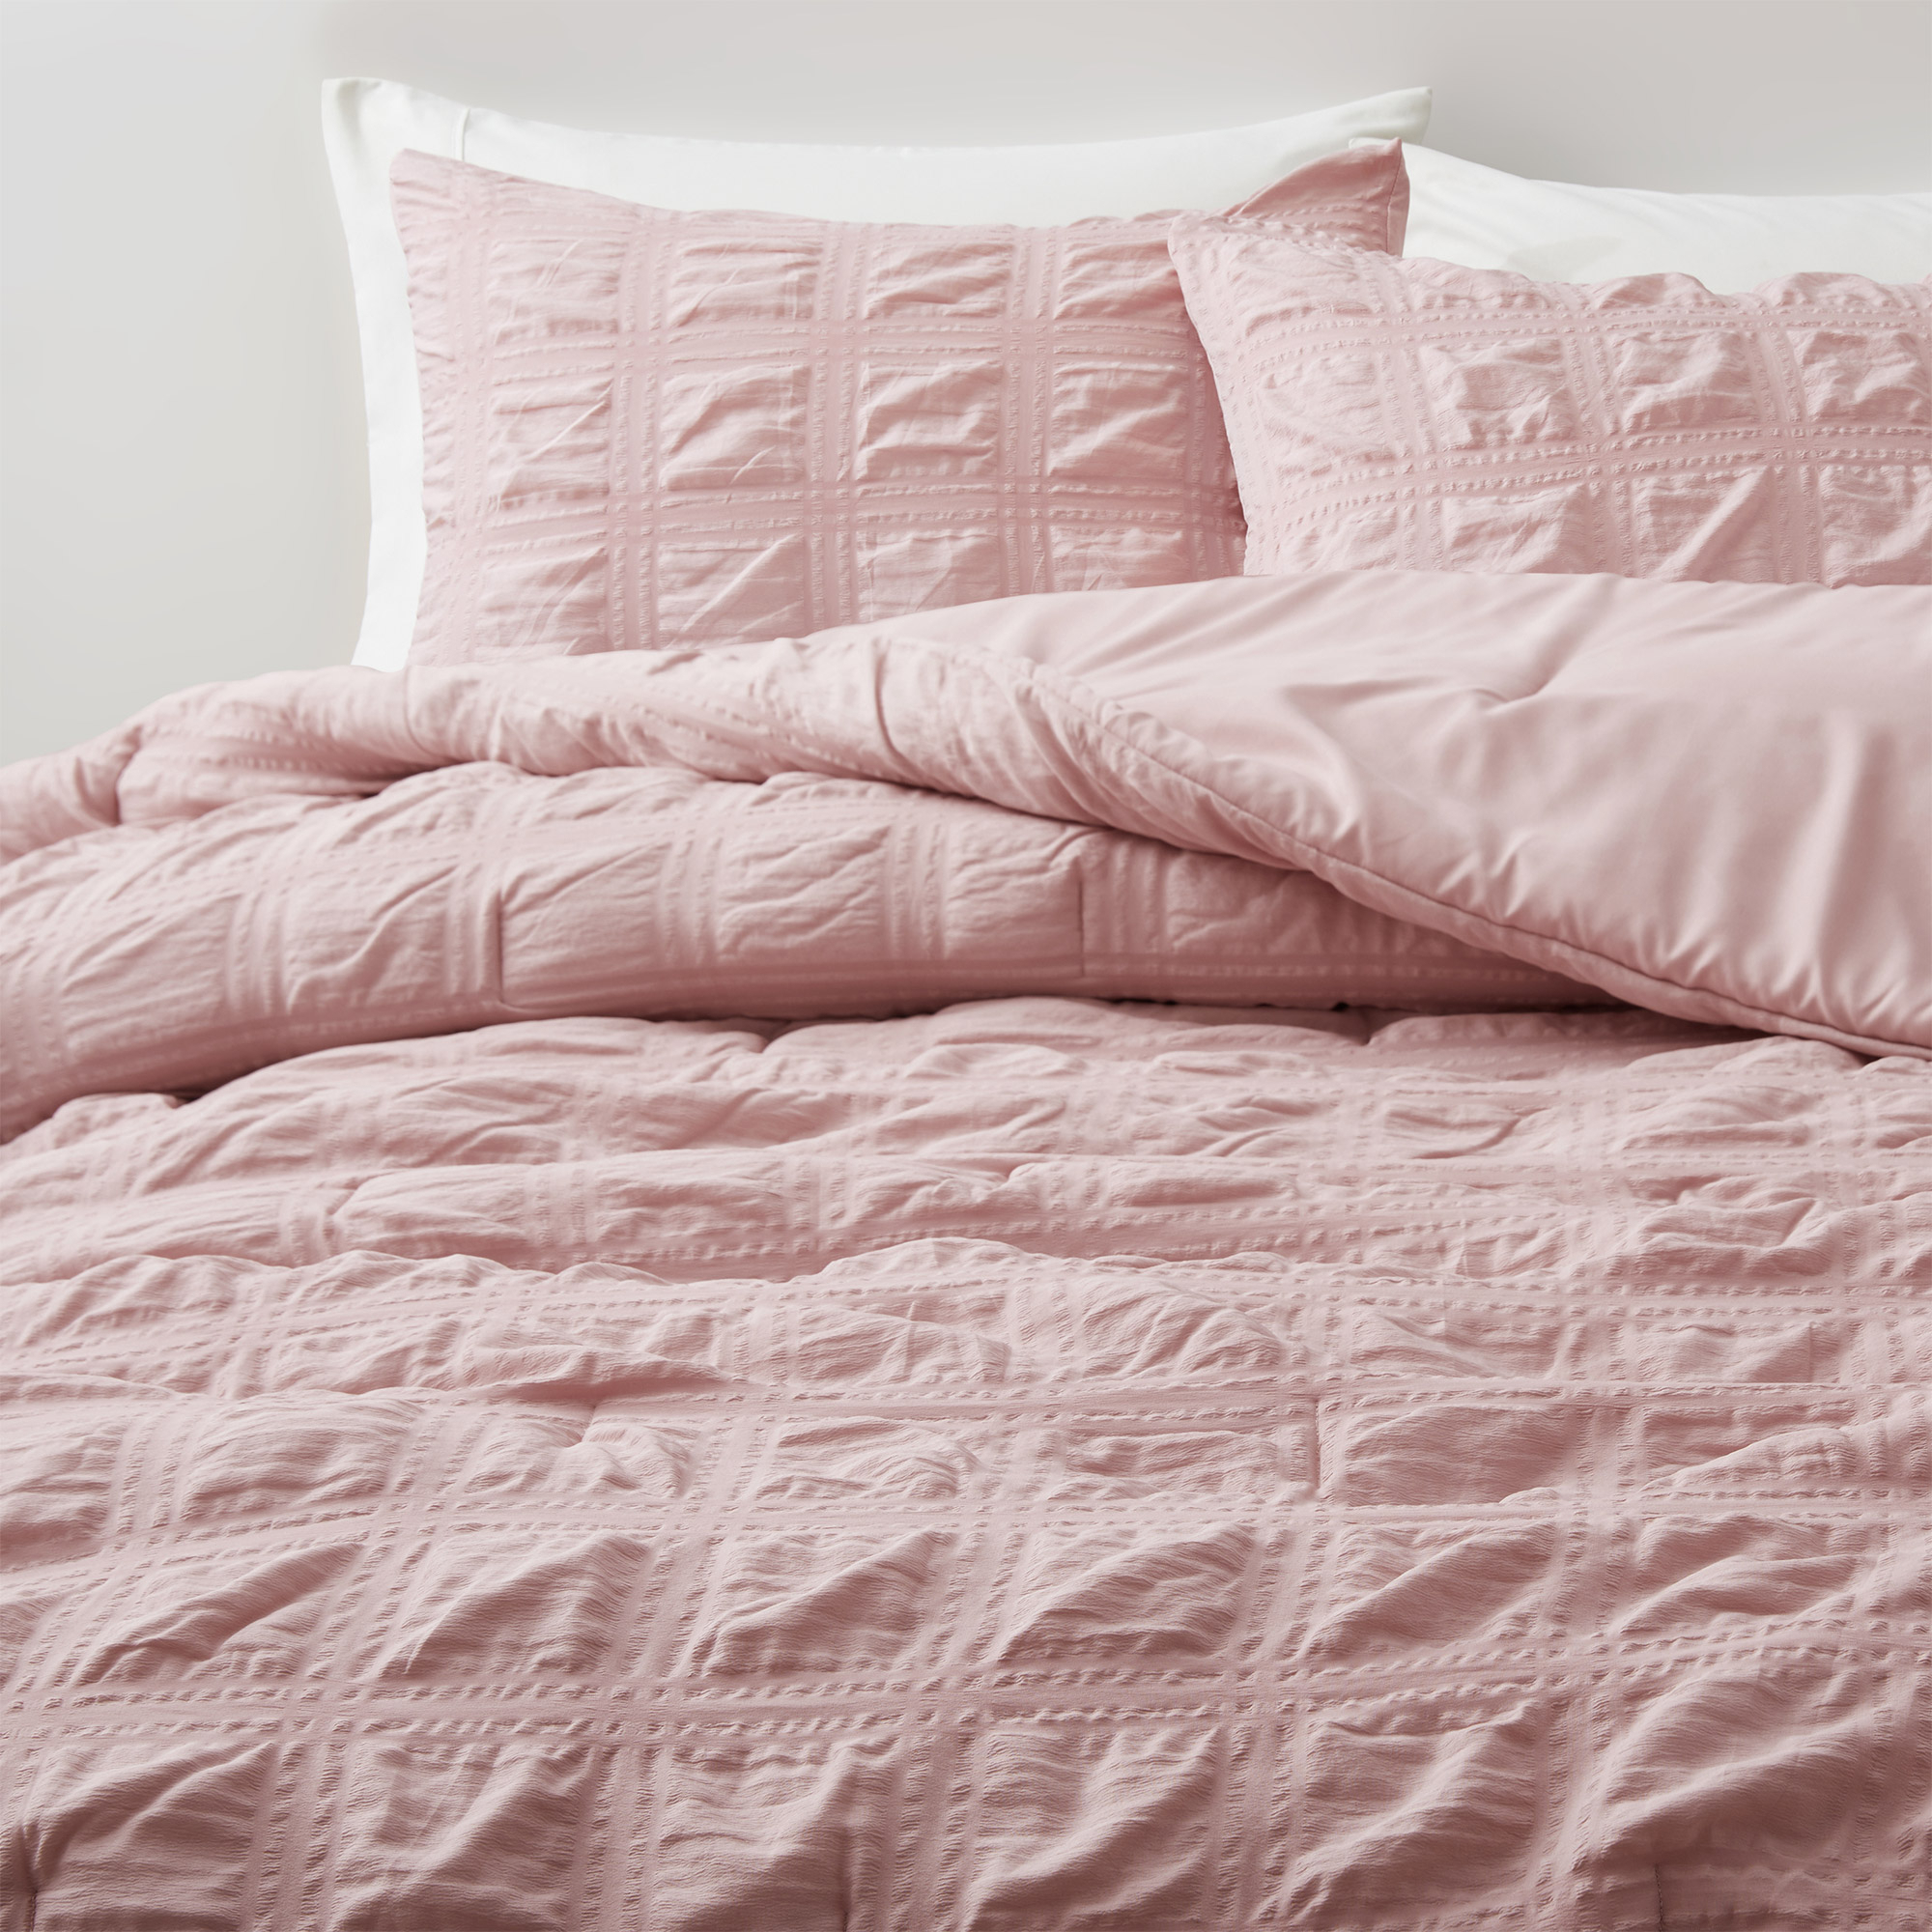 All Season Crinkle Textured Down Alternative Comforter Set-Seersucker Bedding Set - White, King